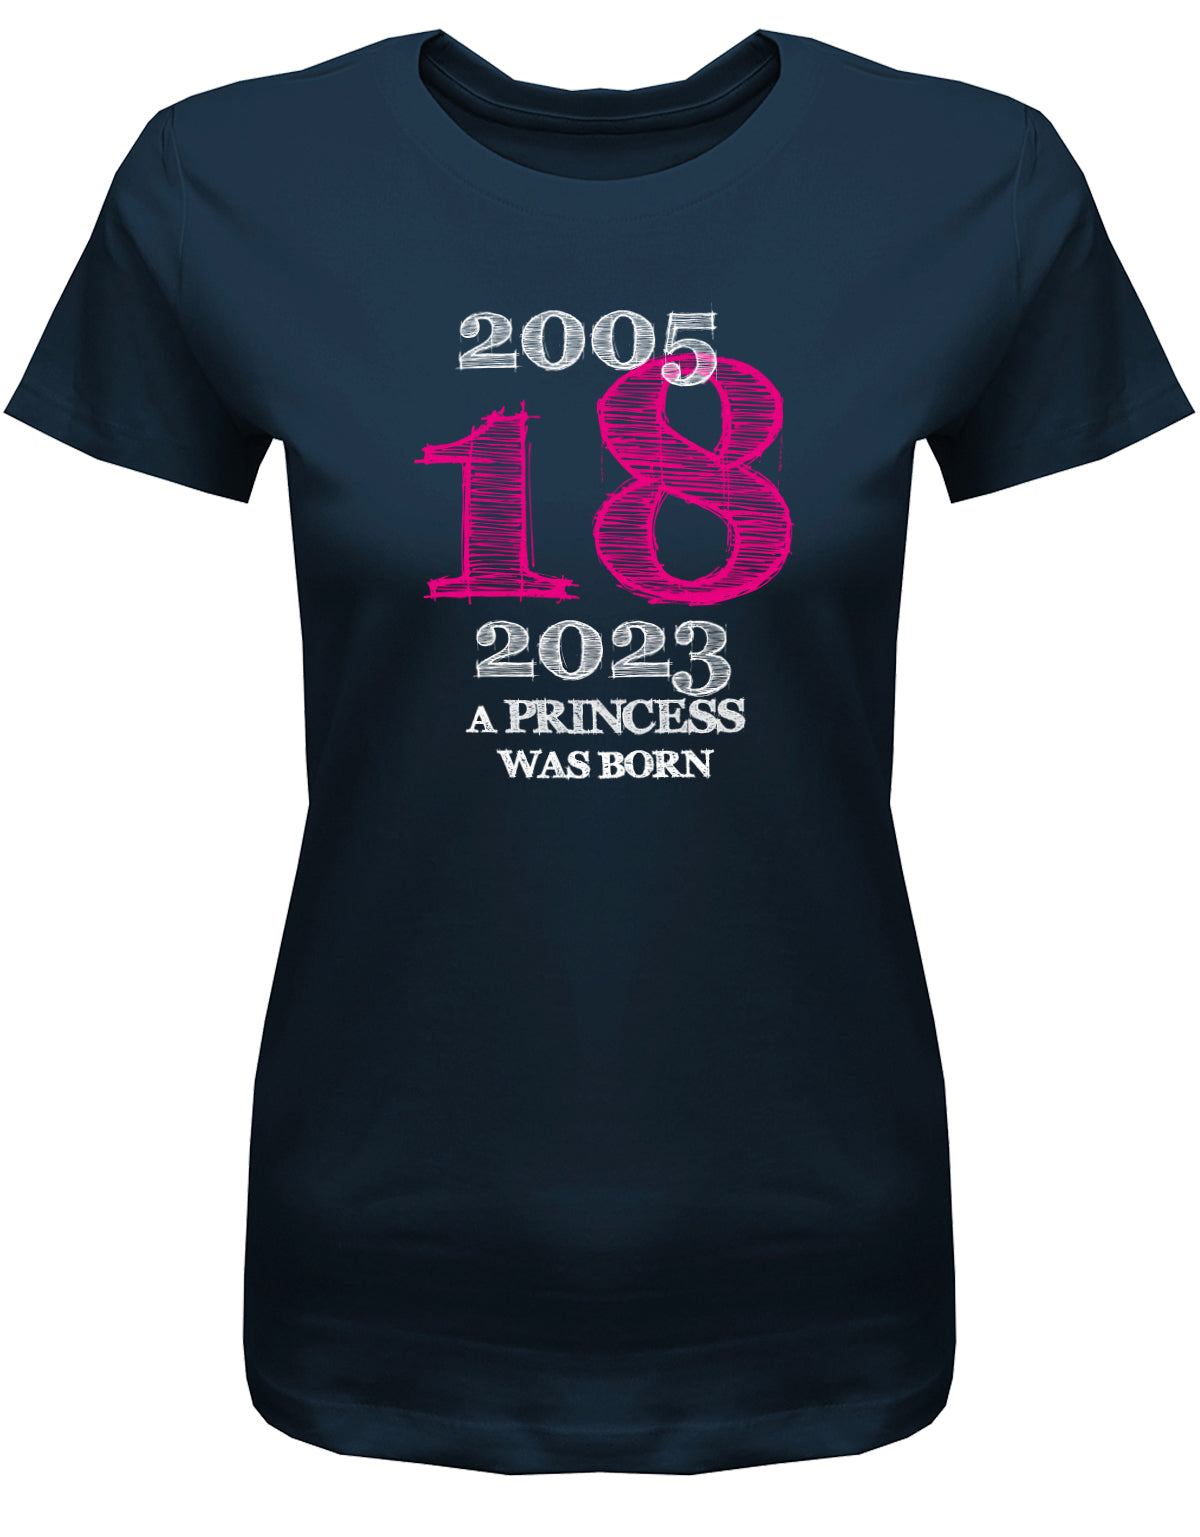 Cooles T-Shirt zum 18 Geburtstag für Mädchen Bedruckt mit: 2005 - 2023 18 a princess was born - Line Style Das T Shirt 10 Geburtstag Mädchen Lustig ist eine super Geschenkidee für alle 18 Jährigen. Man wird nur einmal volljährig. Geschenk zum 18 geburtstag Frau ✓ 2005 geburtstag Frau ✓ 18 Geburtstag tshirt ✓ shirt geburtstag 18 Navy